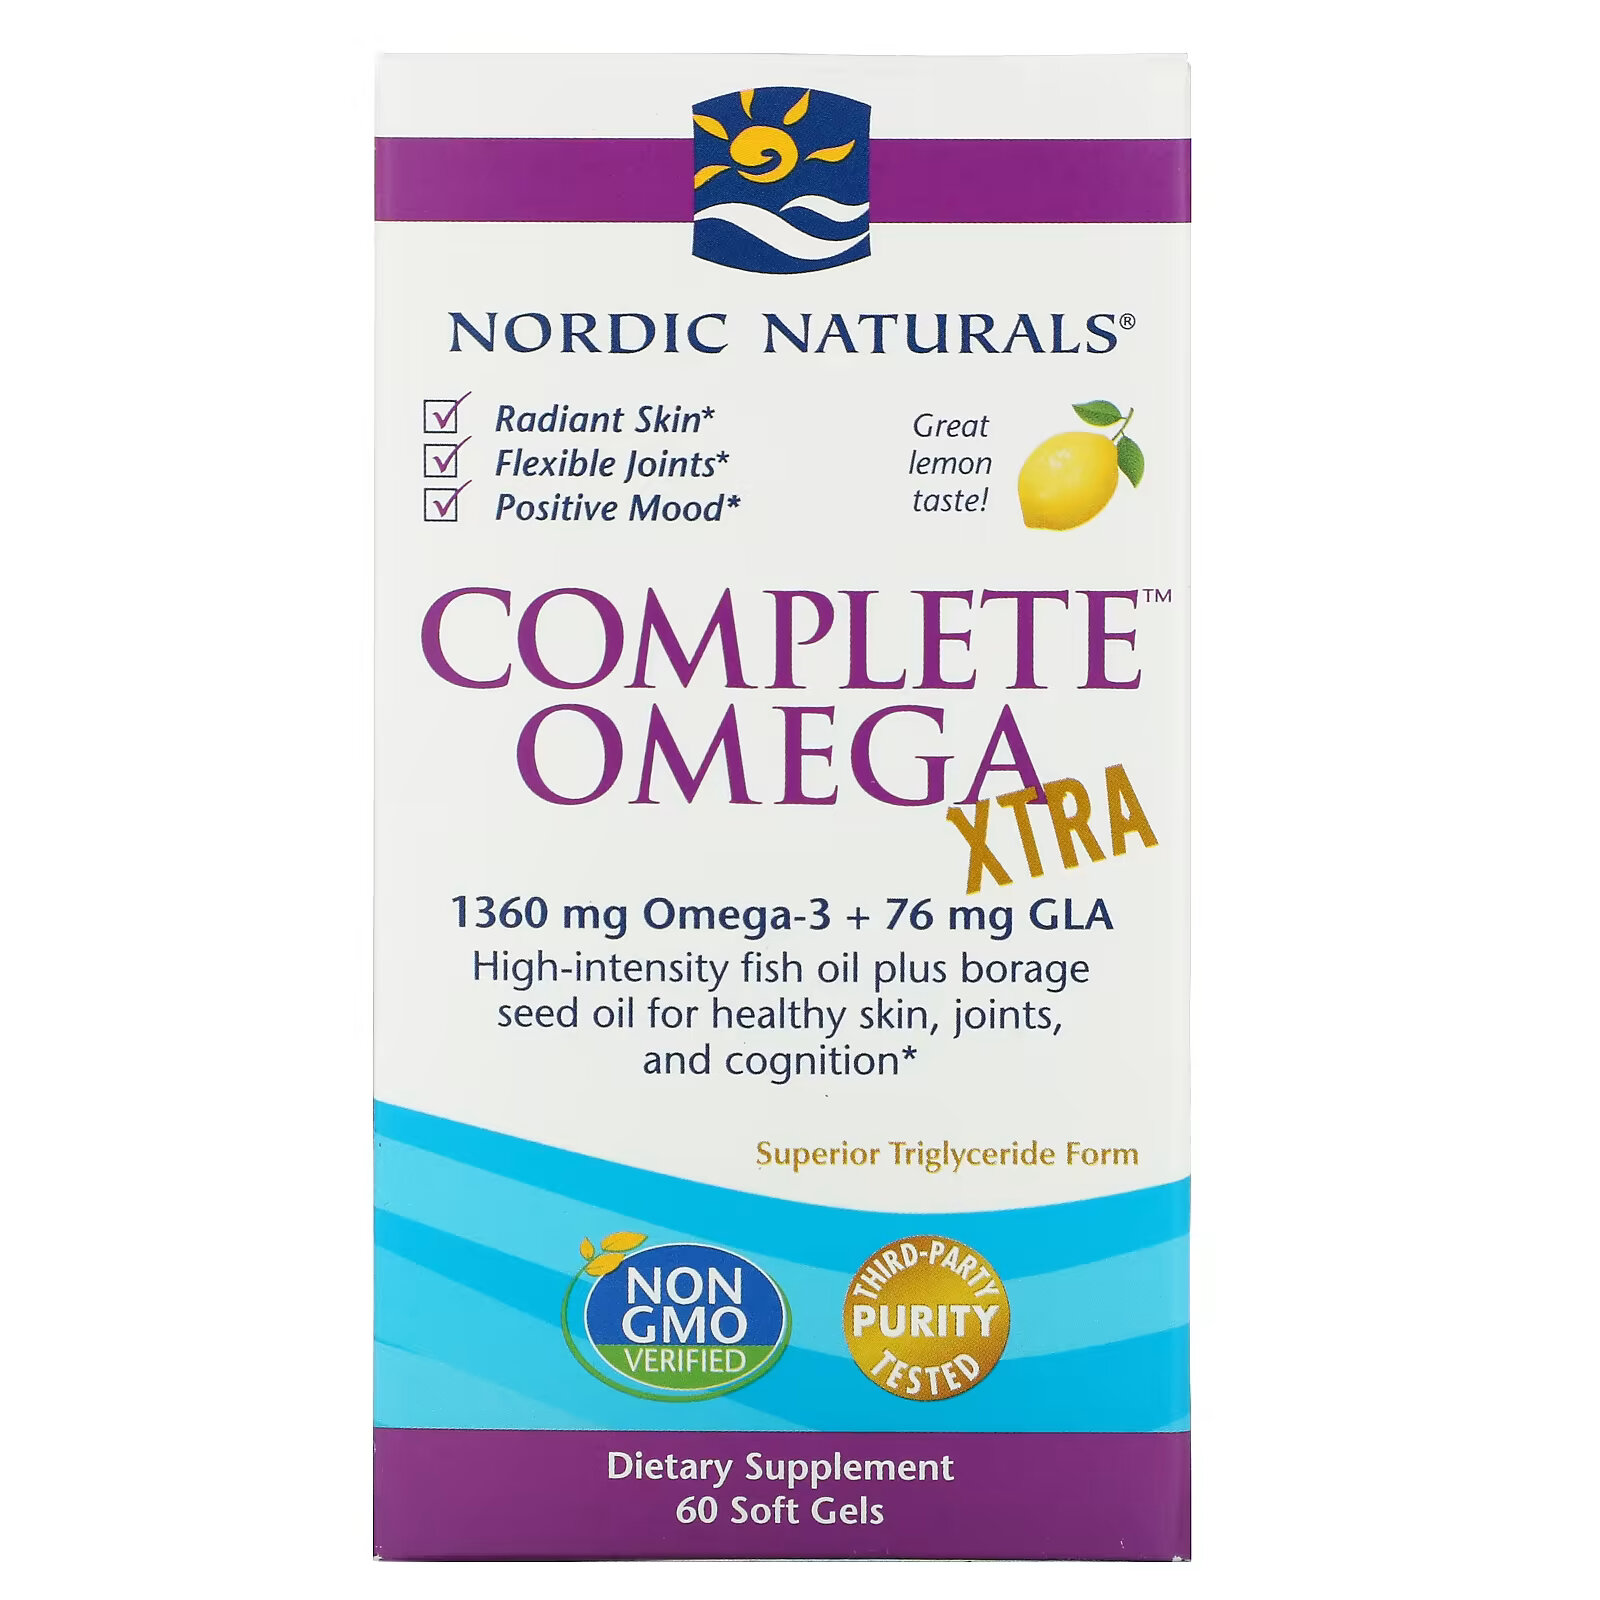 Nordic Naturals, Complete Omega Xtra со вкусом лимона, 680 мг, 60 мягких желатиновых капсул nordic naturals complete omega xtra со вкусом лимона 680 мг 60 мягких желатиновых капсул